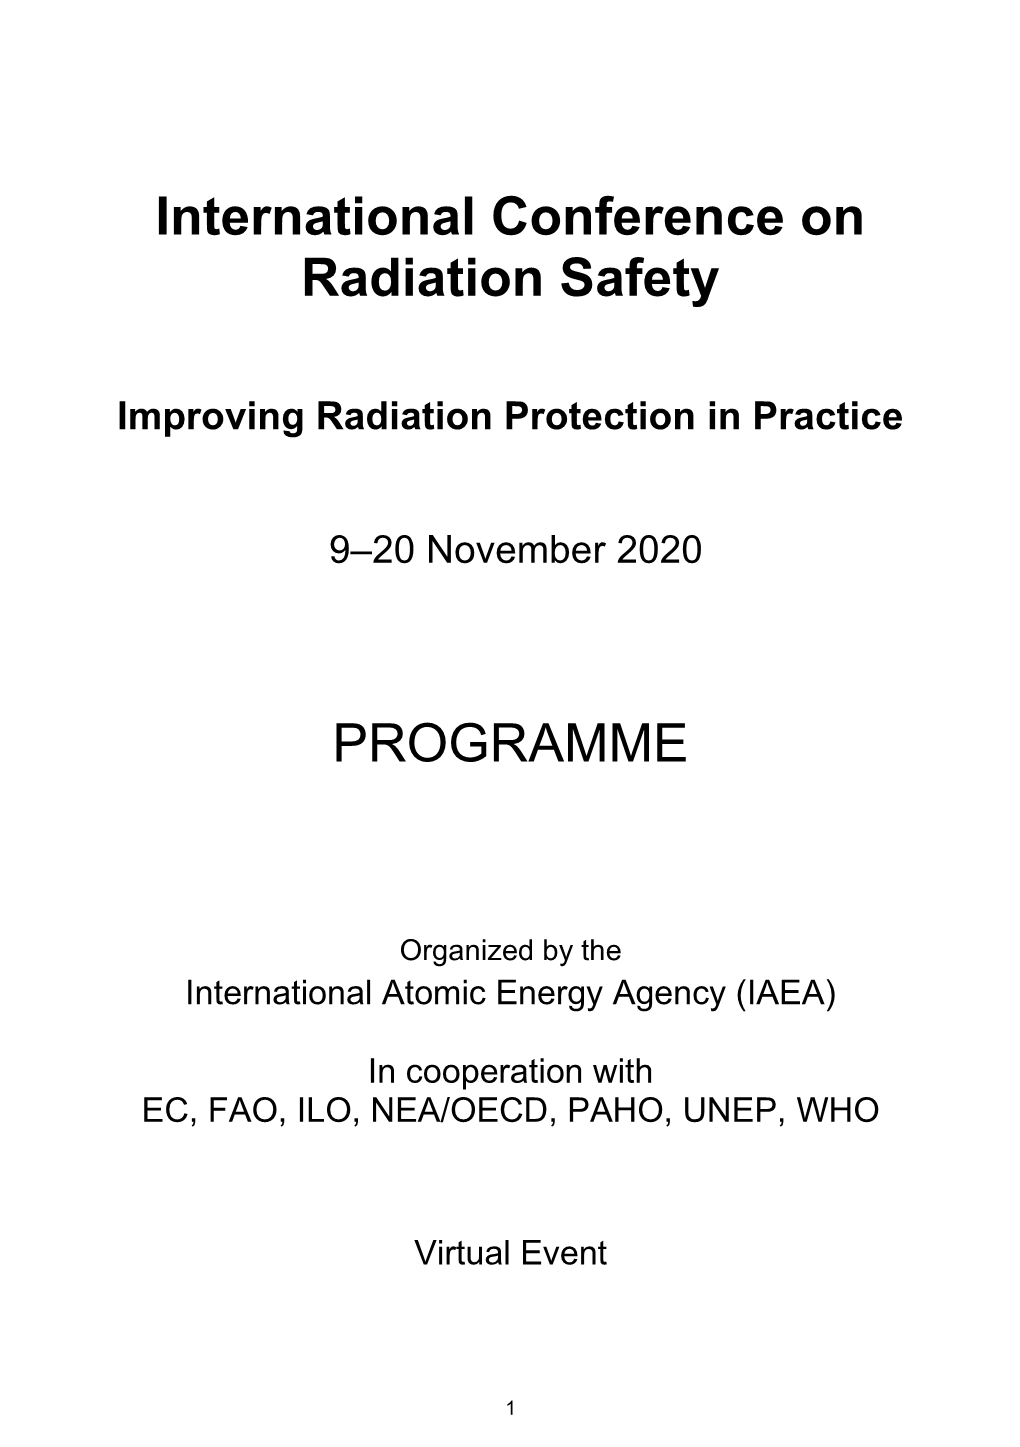 International Conference on Radiation Safety PROGRAMME